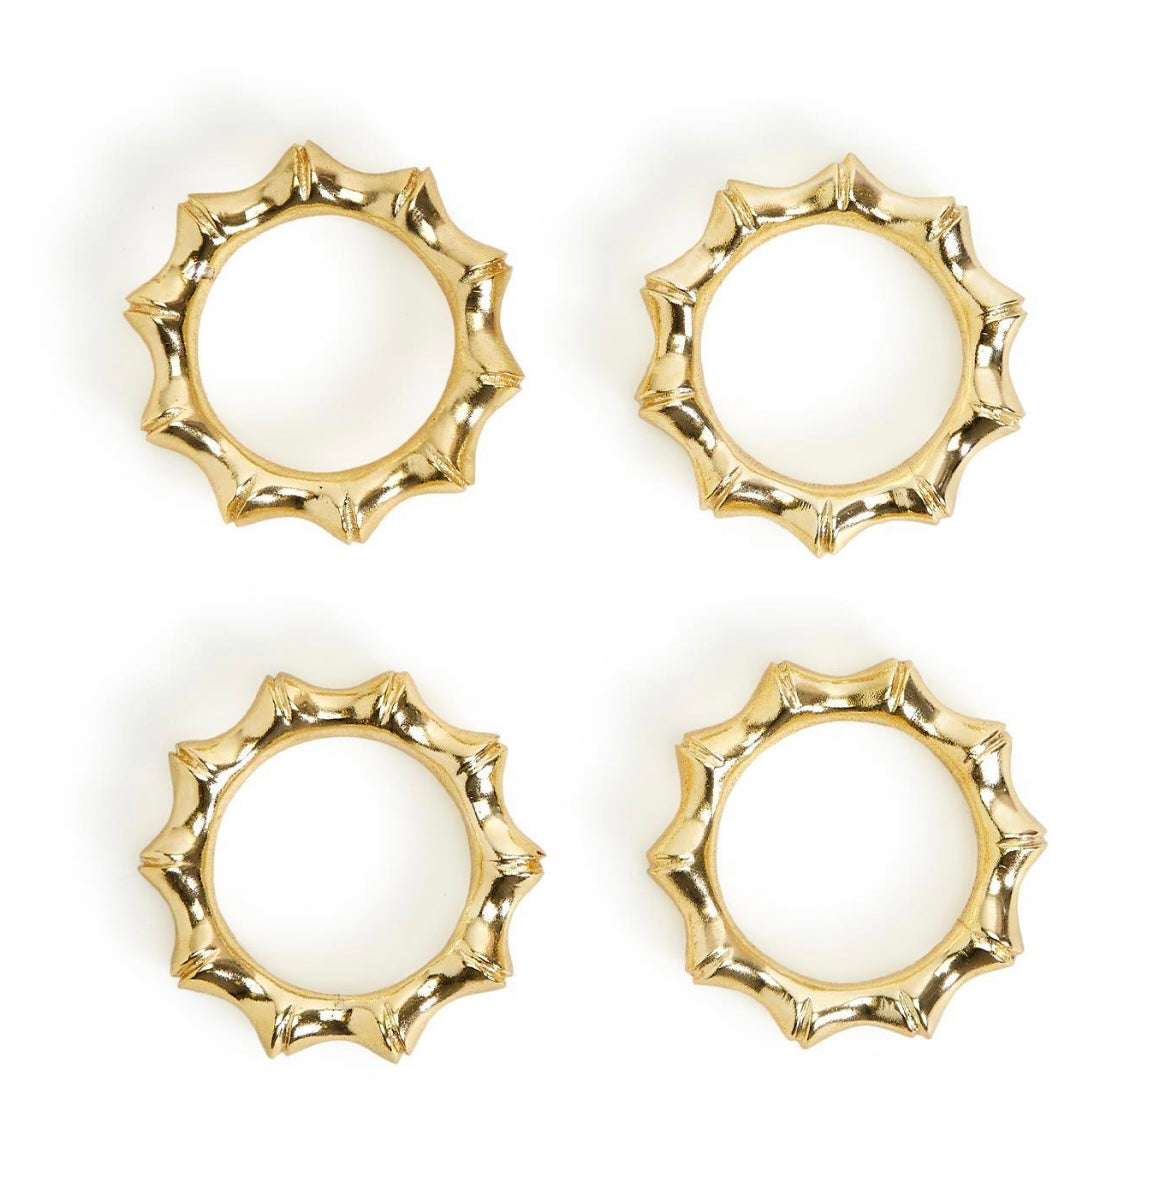 Golden Bamboo Napkin Rings - set of 4